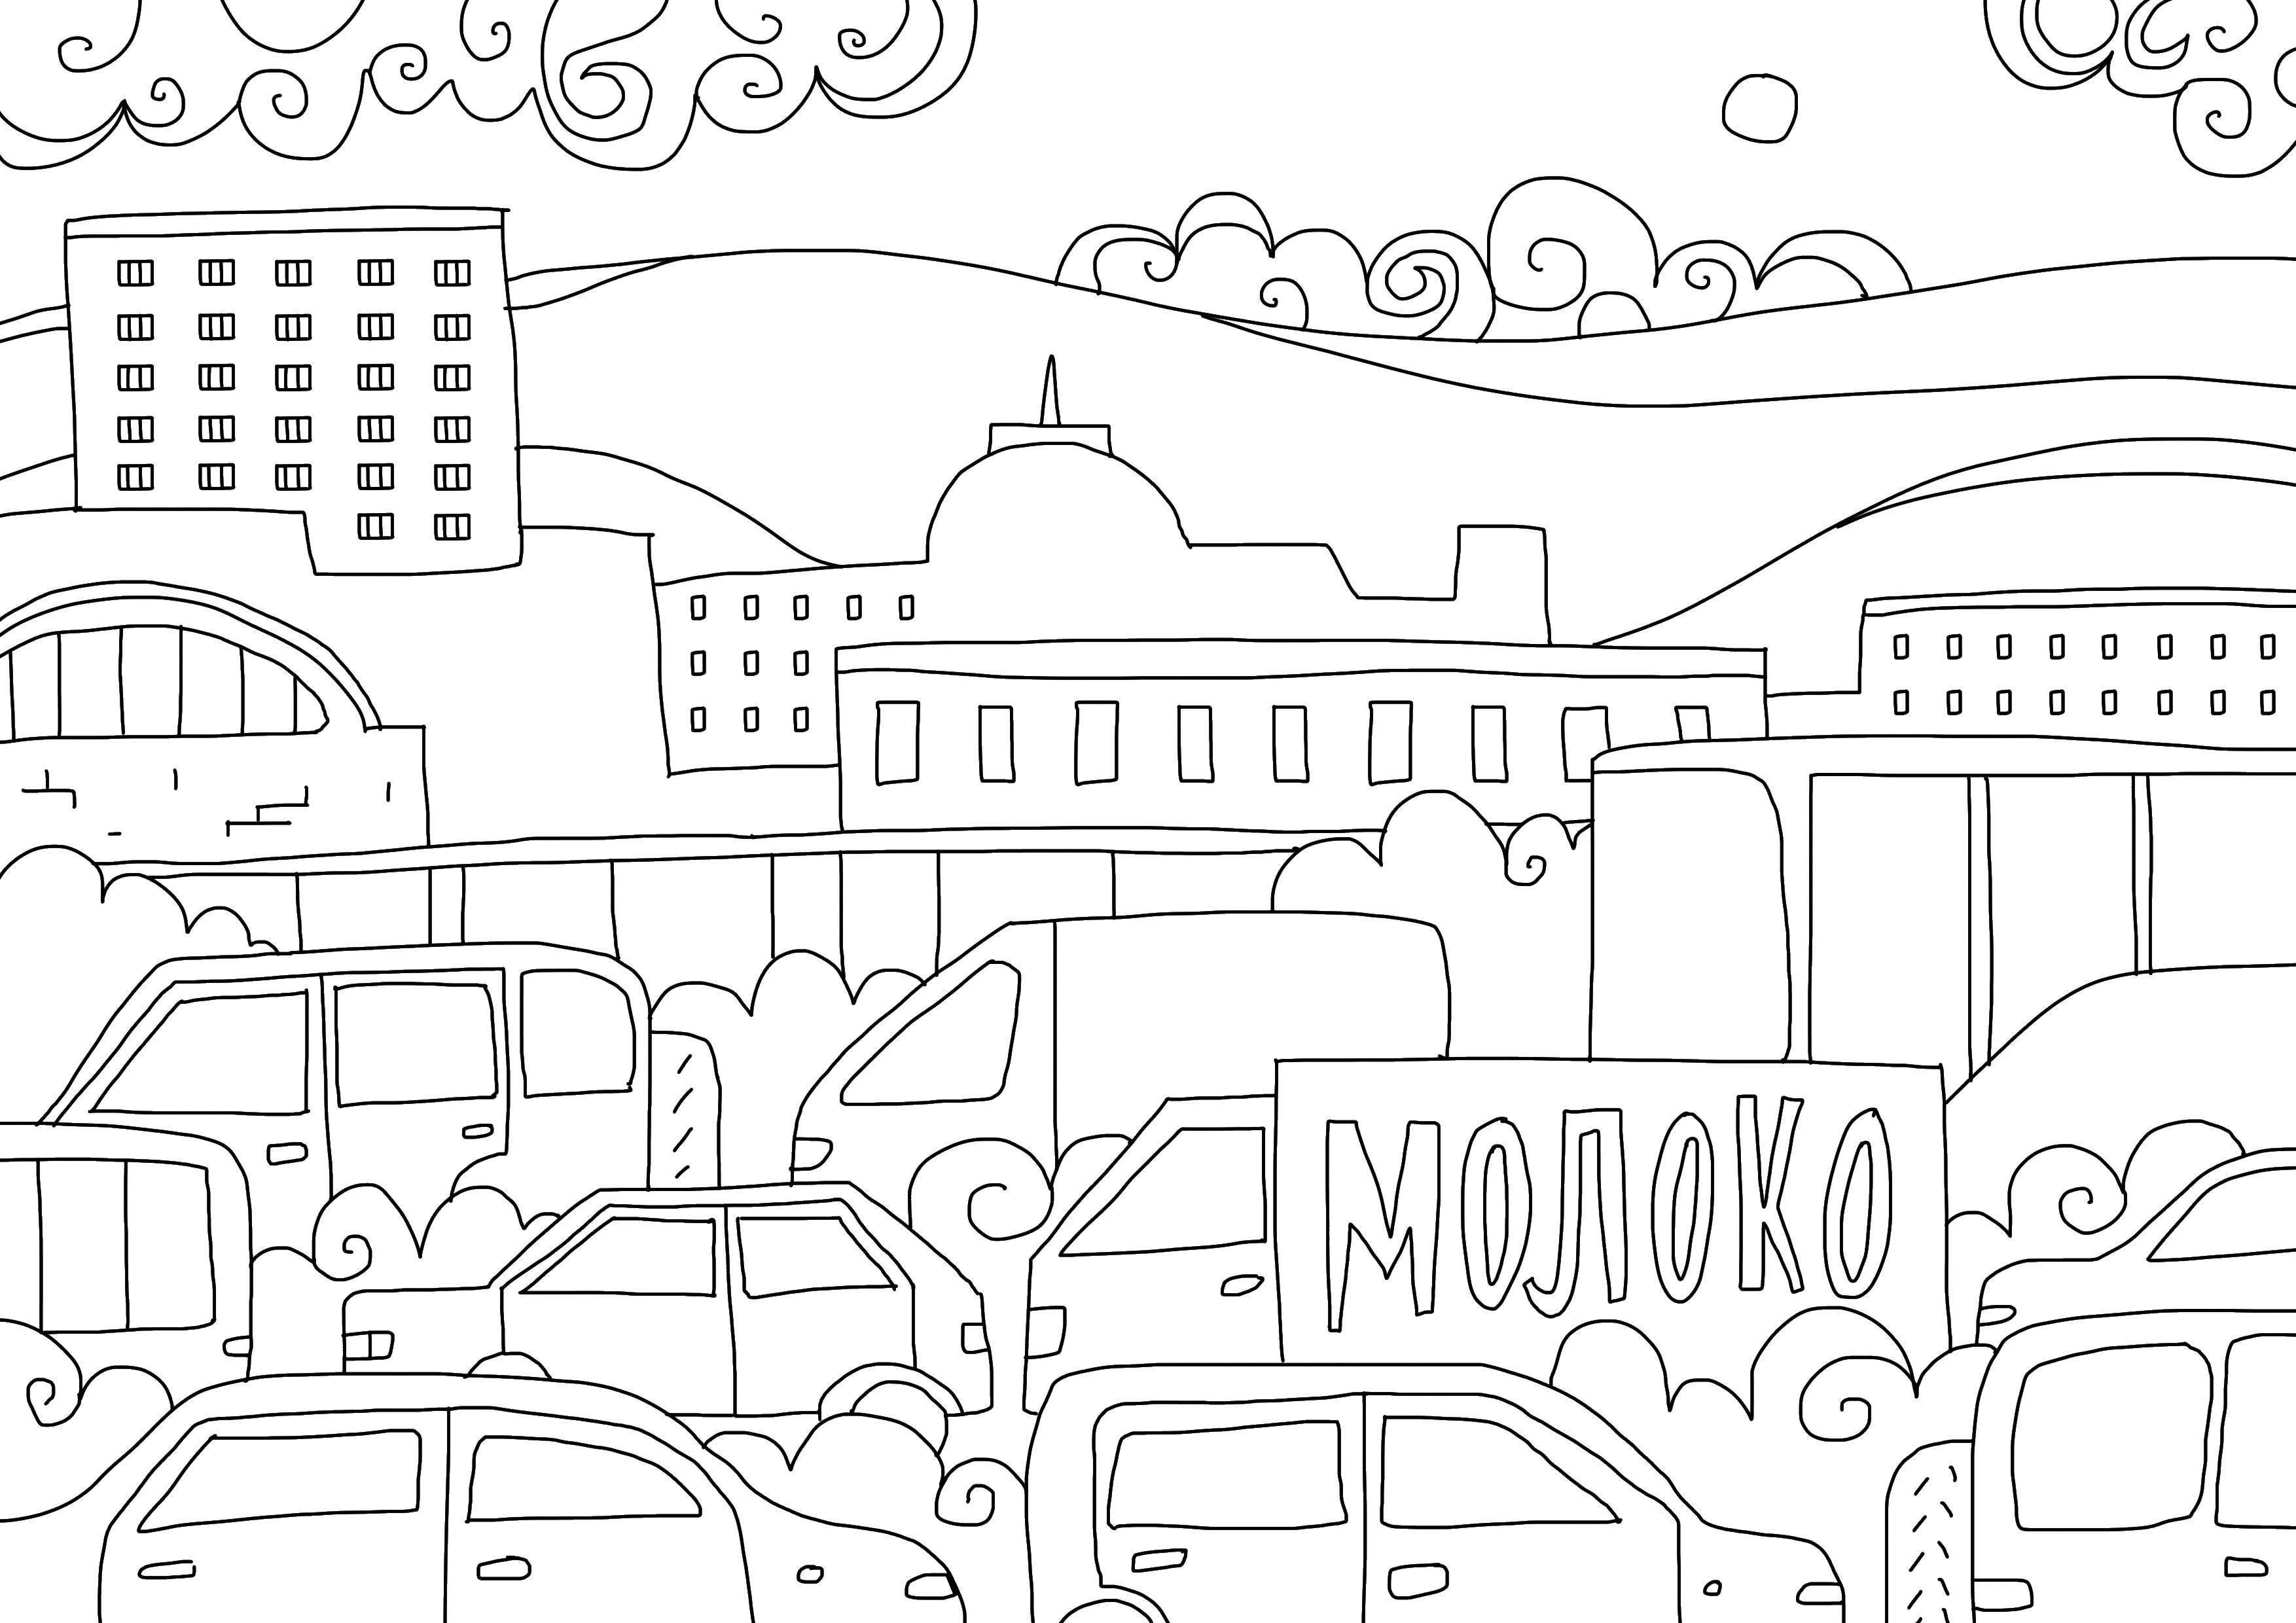 Опис: розмальовки  Міське життя. Категорія: місто. Теги:  Місто , будинки, будівлі, світлофор.